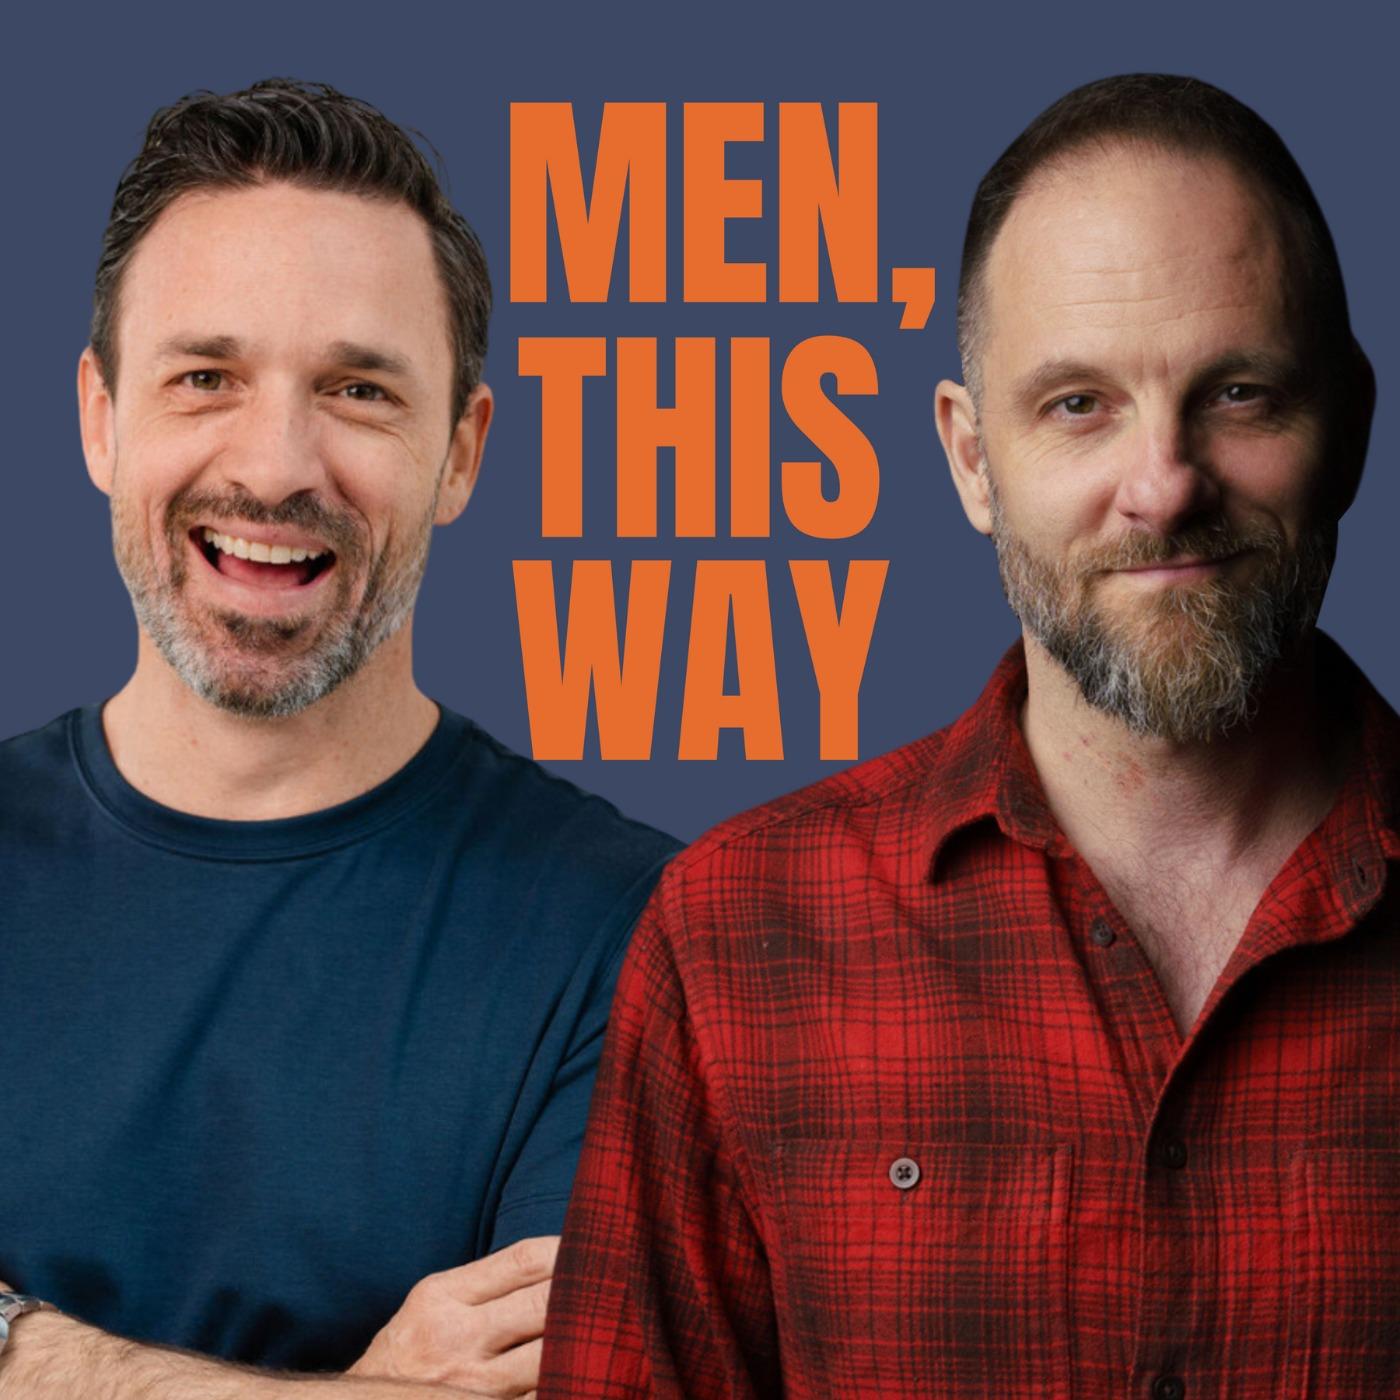 Men, This Way